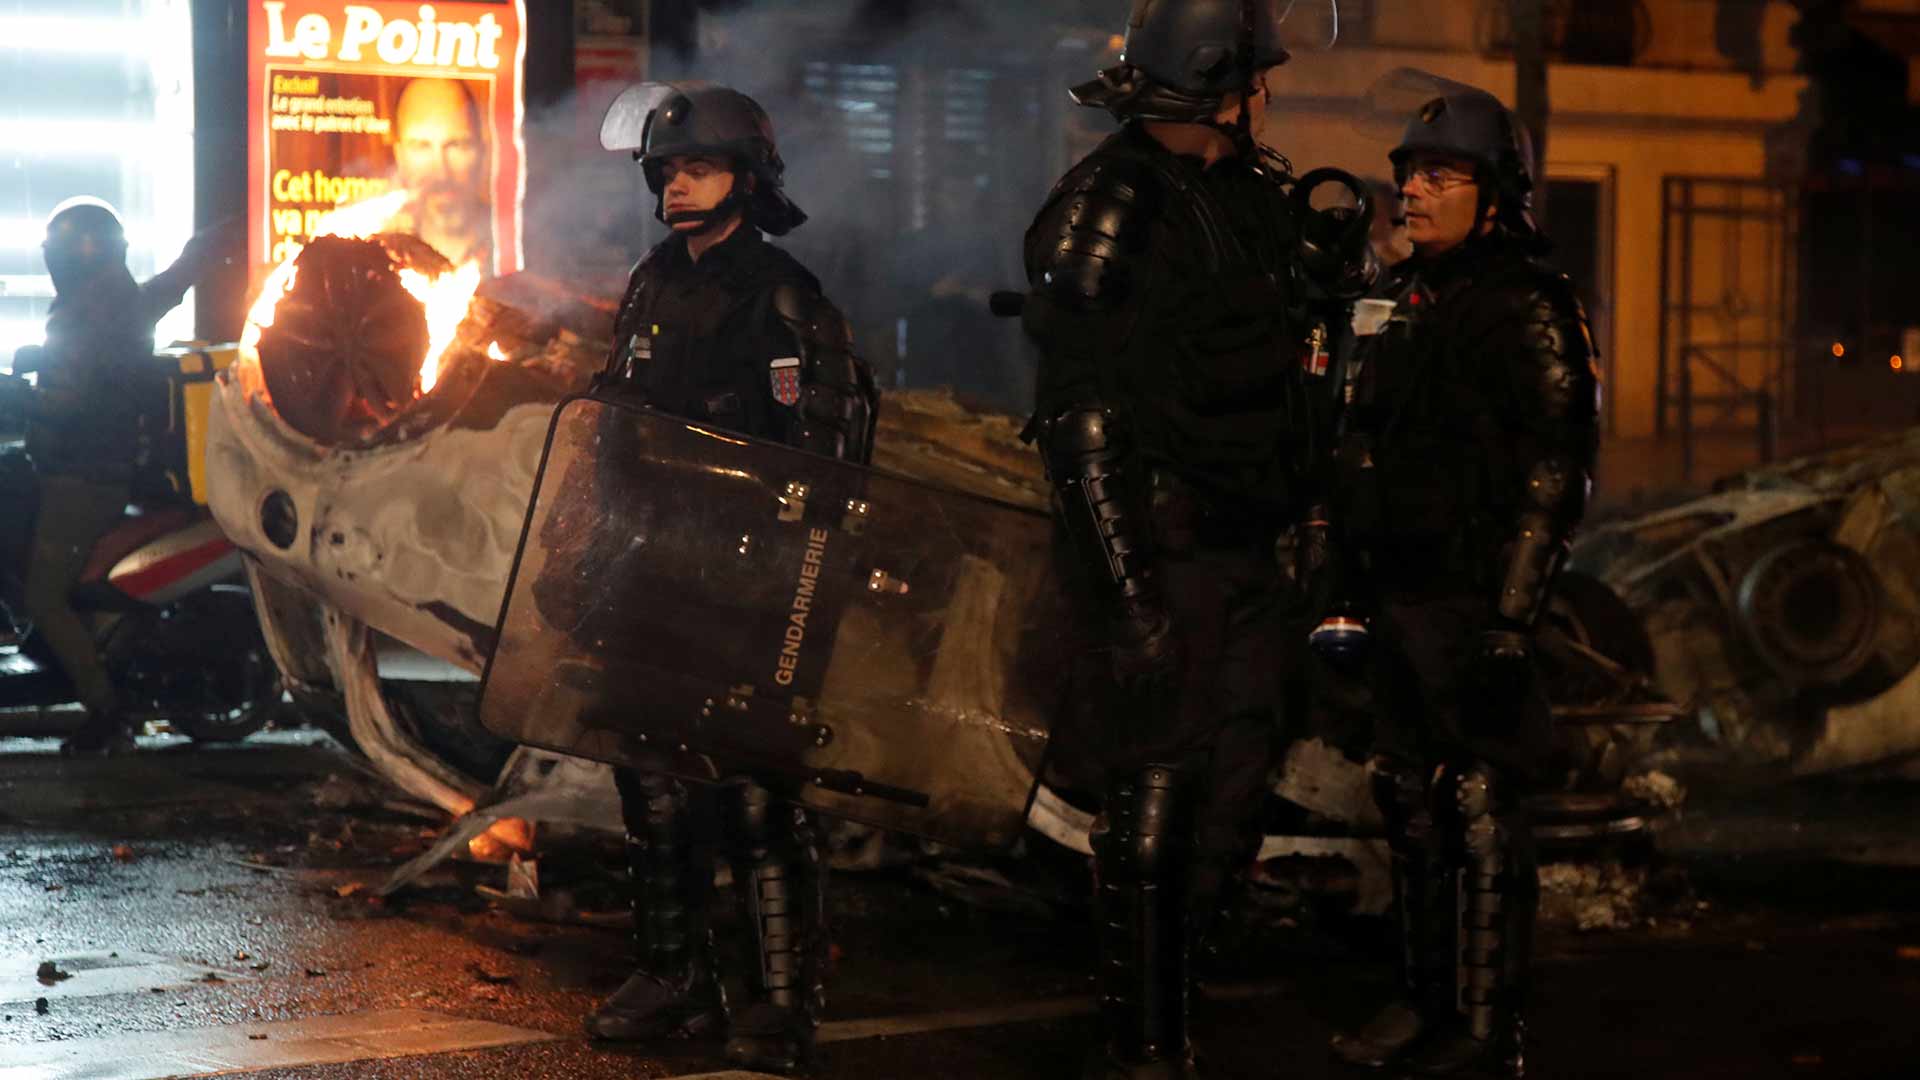 El primer ministro francés se reunirá con los 'chalecos amarillos' tras los peores disturbios en más de una década